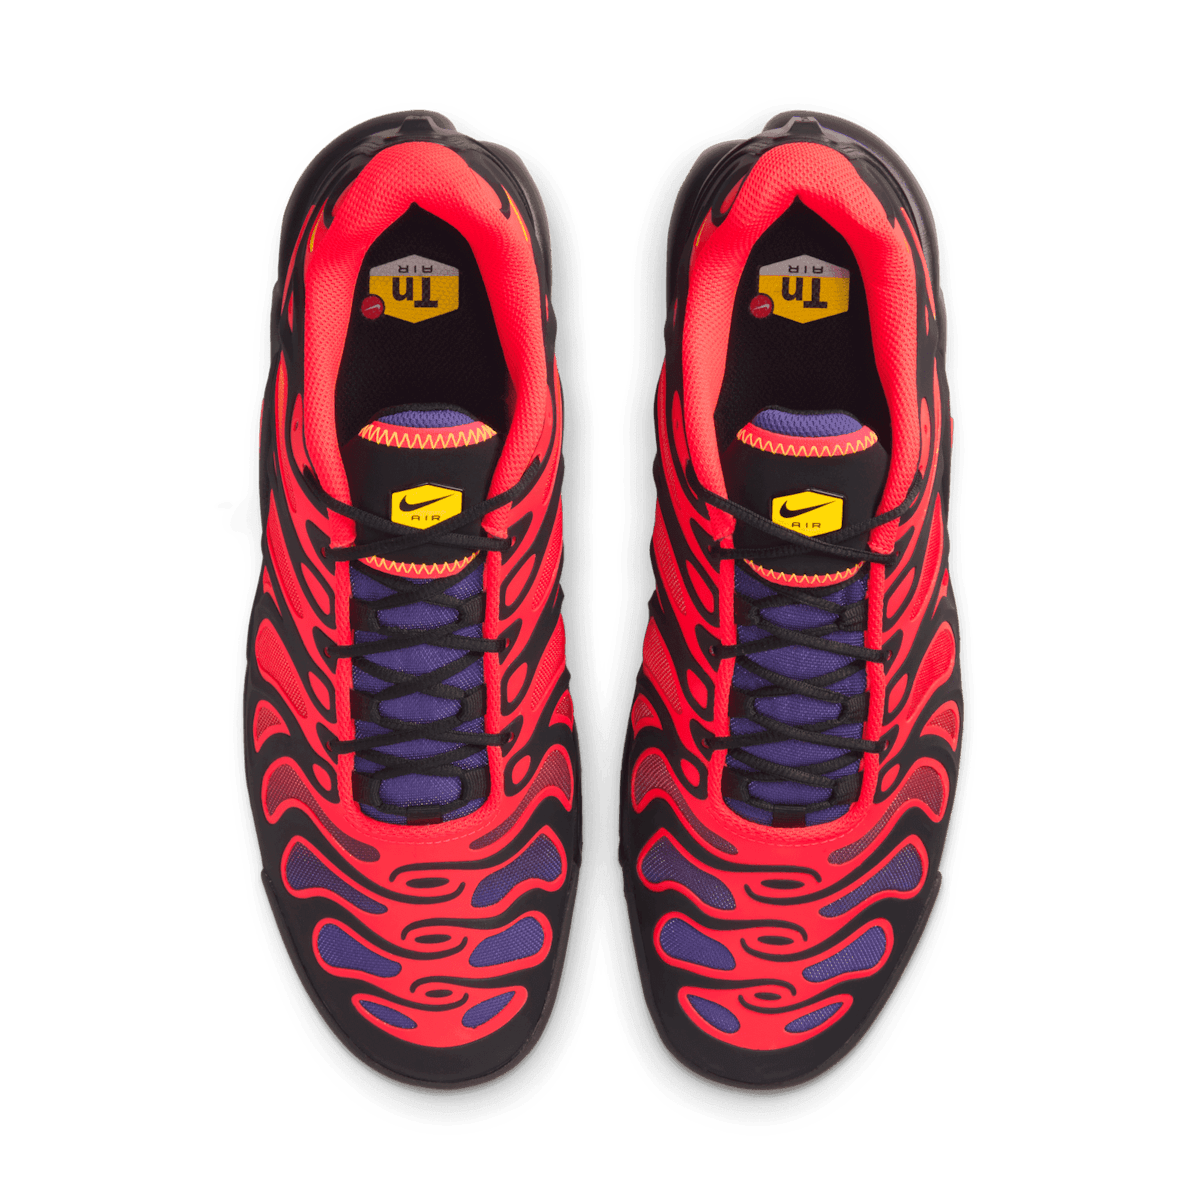 Nike Air Max Plus Drift Black Bright Crimson Angle 1